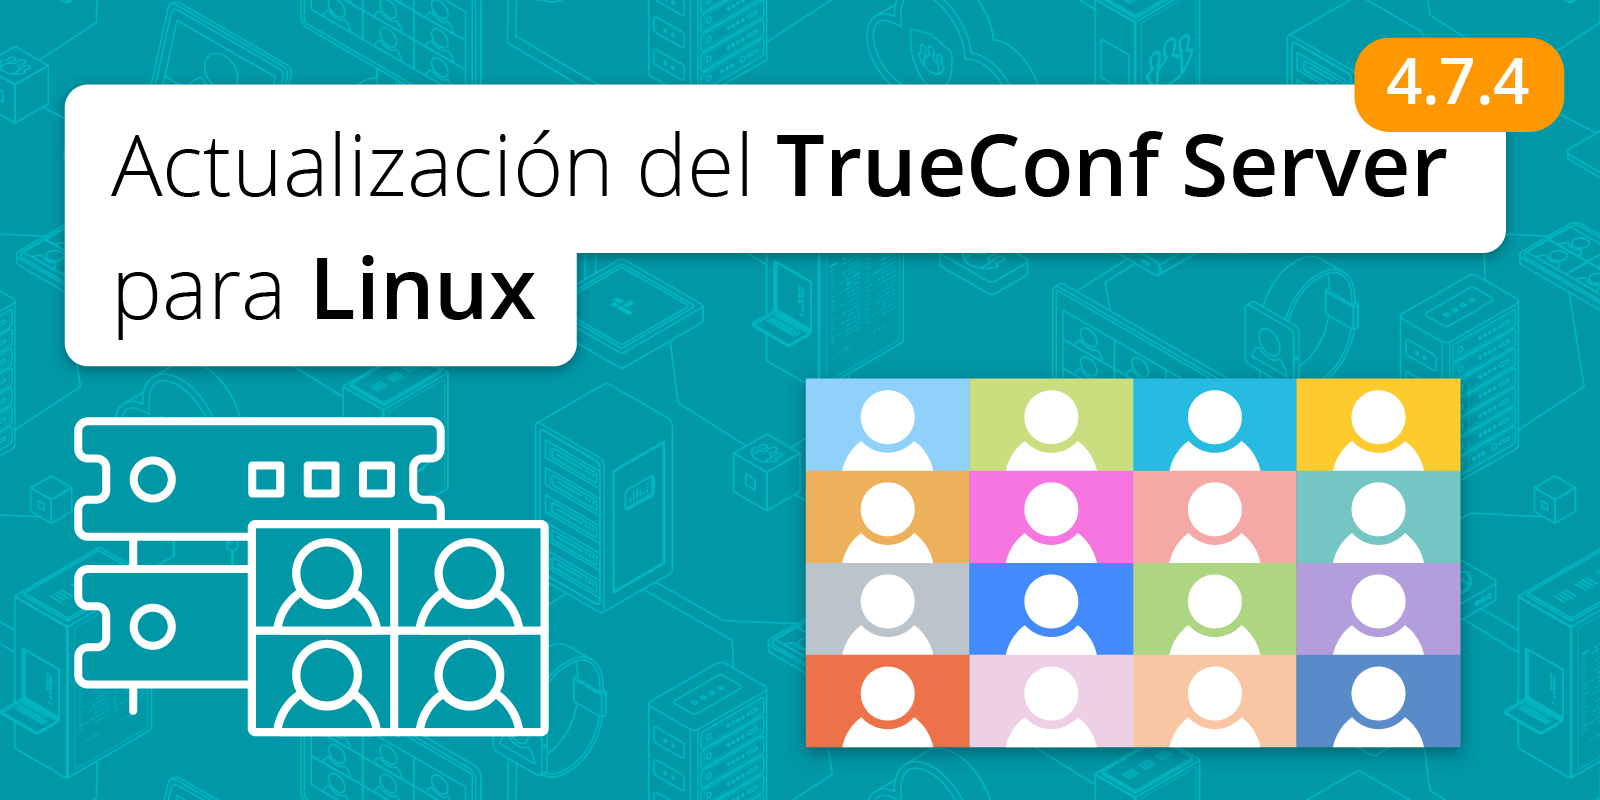 TrueConf Server 4.7.4 para Linux: compatibilidad con Debian 11 5